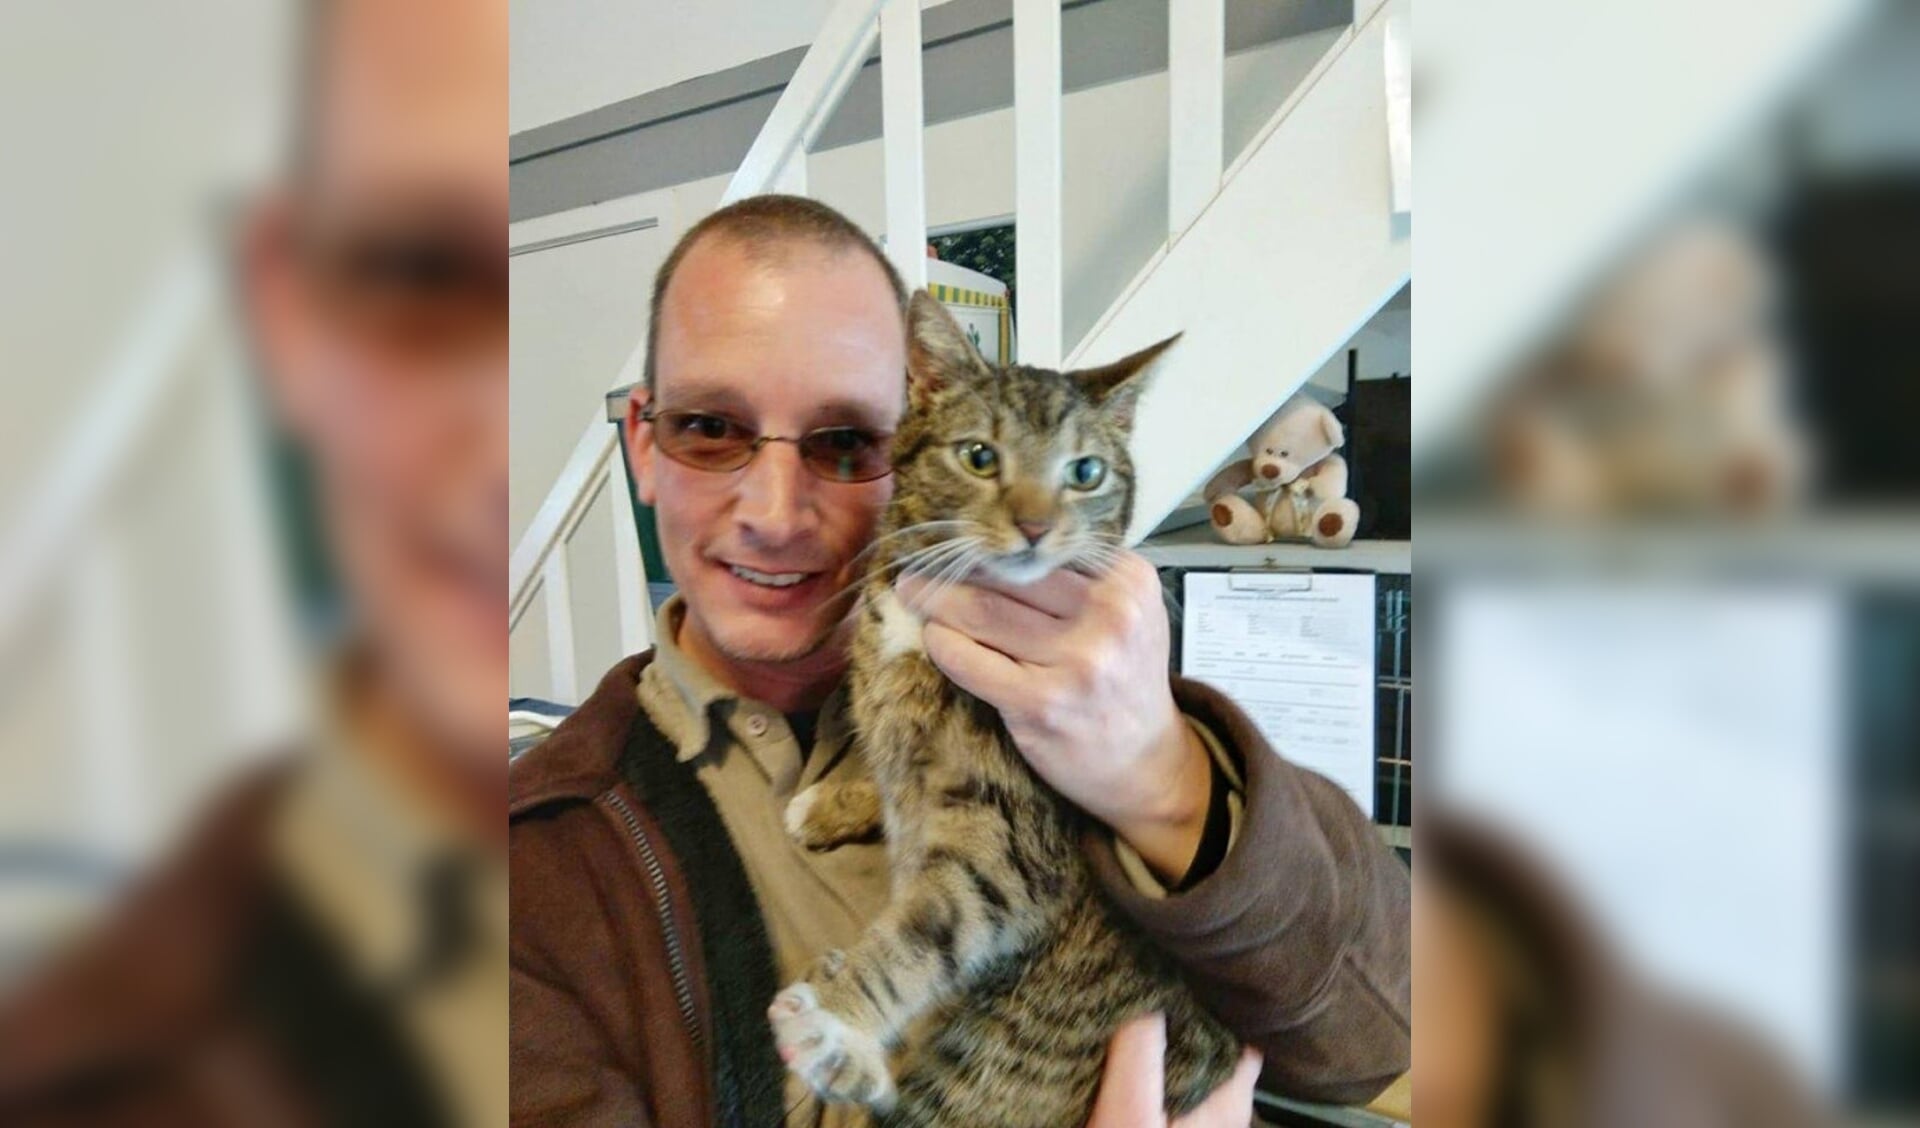  Paul Roorda uit Dronten met zijn kat Gizmo.